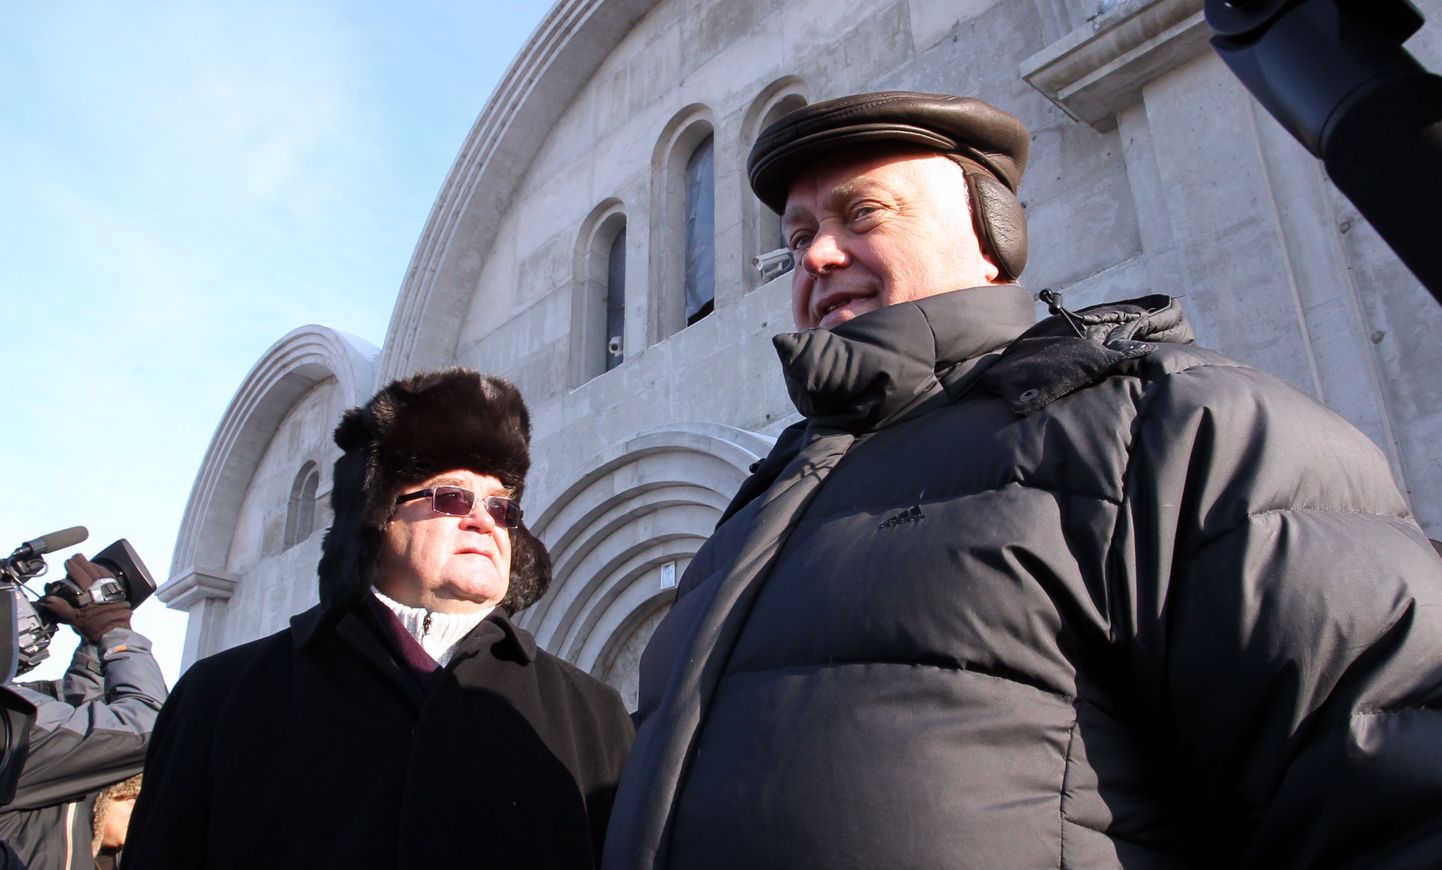 Venemaa Raudteede juht Vladimir Jakunin (paremal) koos Tallinna linnapea Edgar Savisaarega Lasnamäe kiriku juures 2011. aastal.